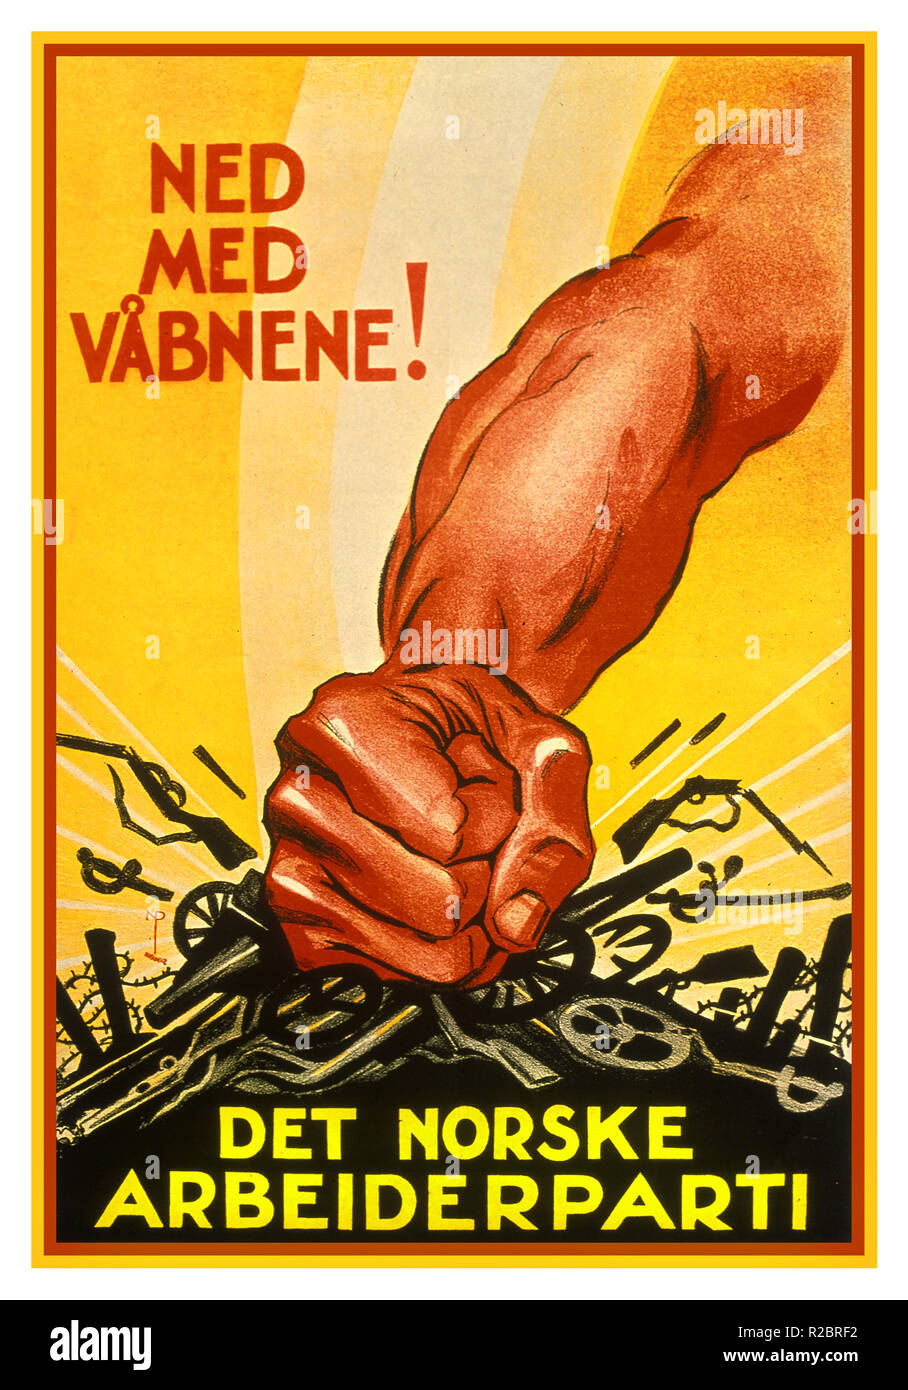 Vintage 1930 cartel propagandístico noruego 'Down con armas" (NED MED VABNENE!) Det norske Arbeiderparti 'El Partido Laborista Noruego' Foto de stock